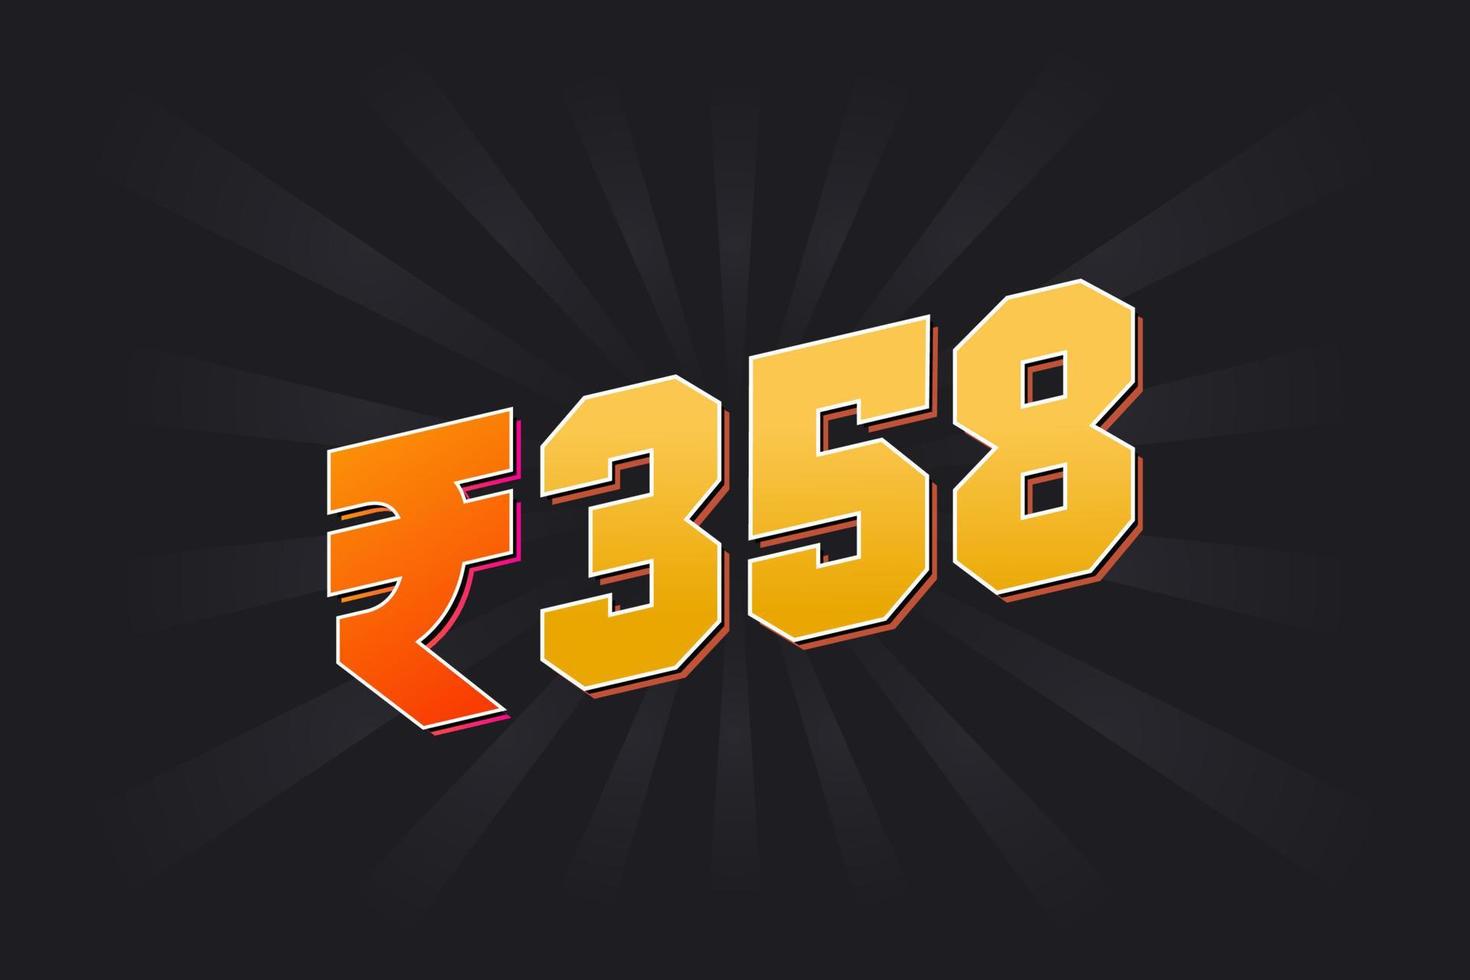 Image vectorielle de 358 roupies indiennes. 358 roupie symbole texte en gras illustration vectorielle vecteur